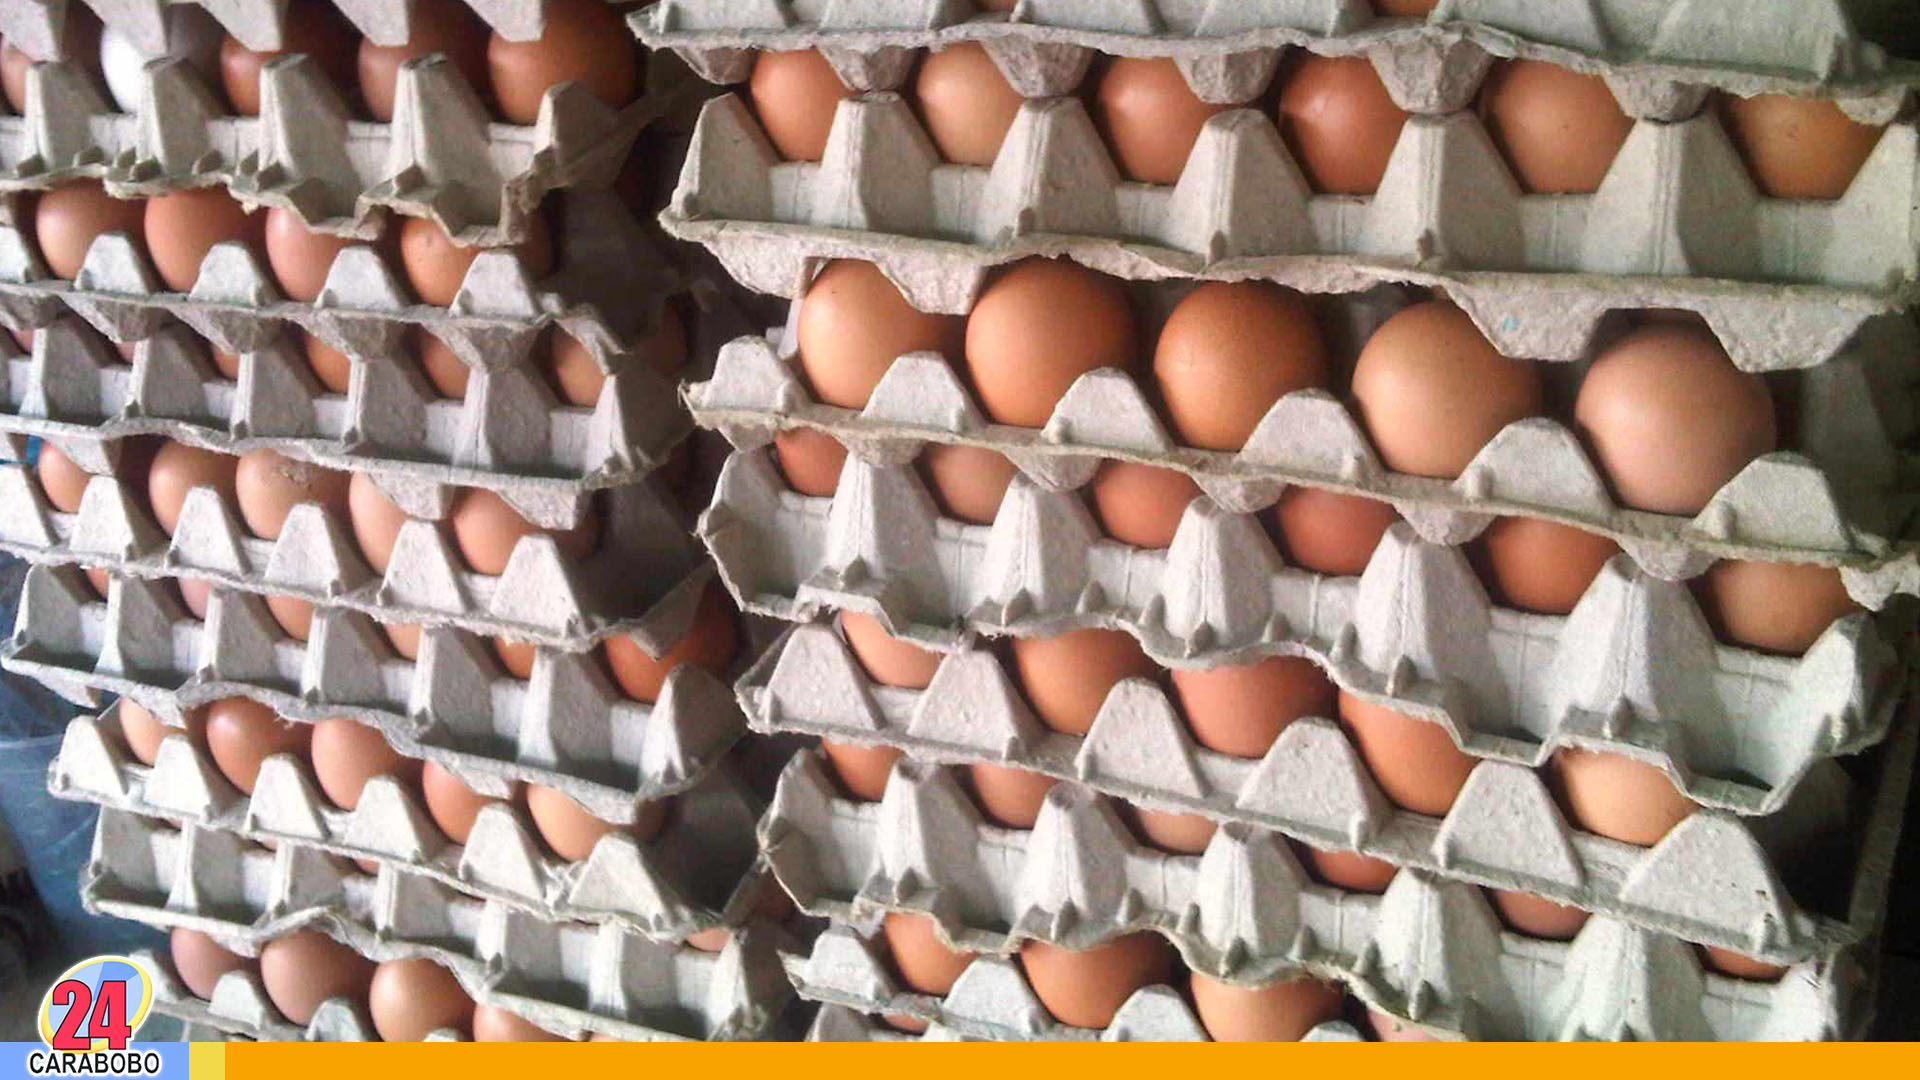 Precio de huevos - Precio de huevos